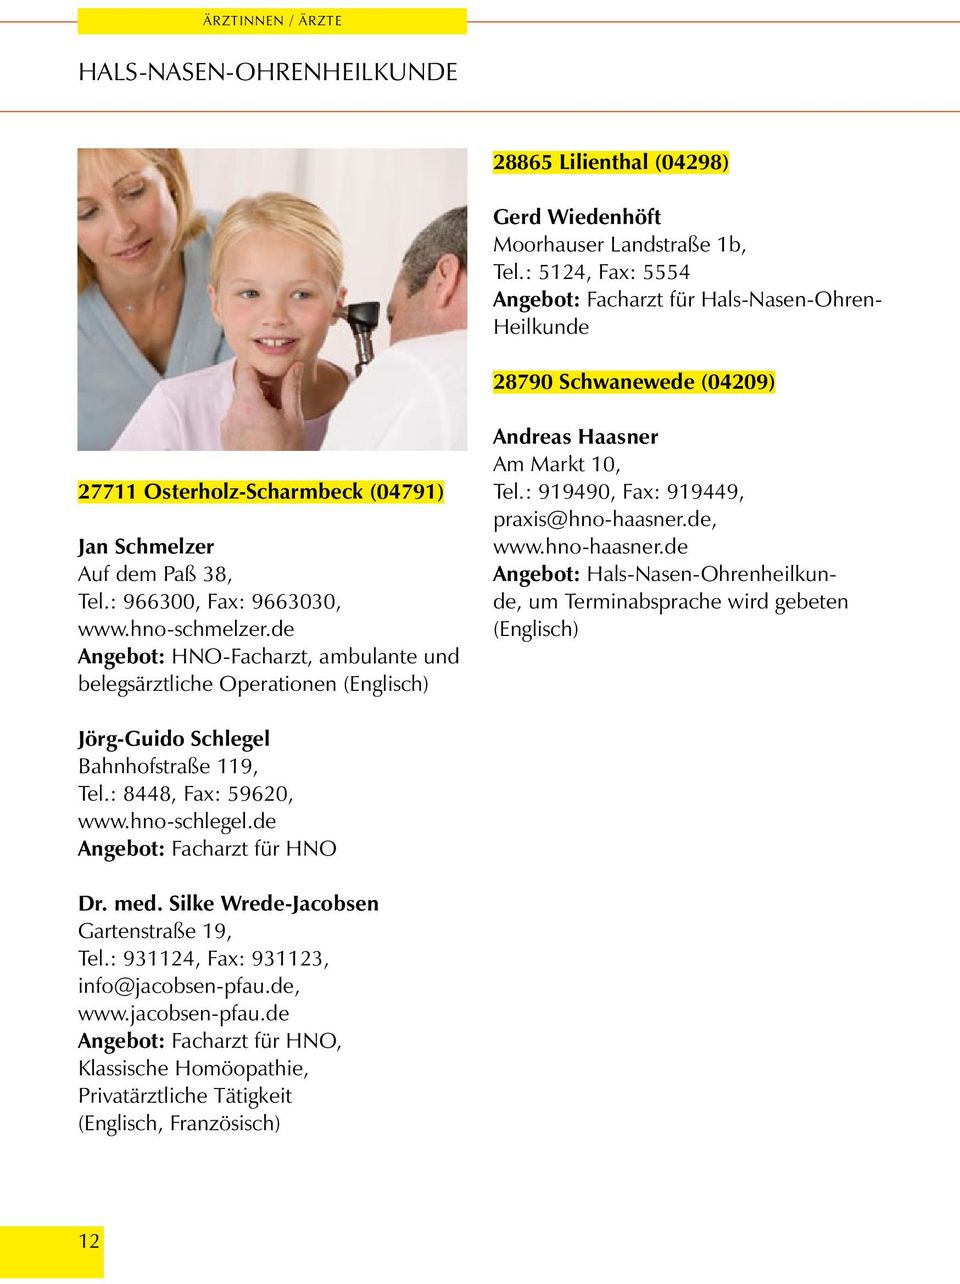 de Angebot: HNO-Facharzt, ambulante und belegsärztliche Operationen Andreas Haasner Am Markt 10, Tel.: 919490, Fax: 919449, praxis@hno-haasner.